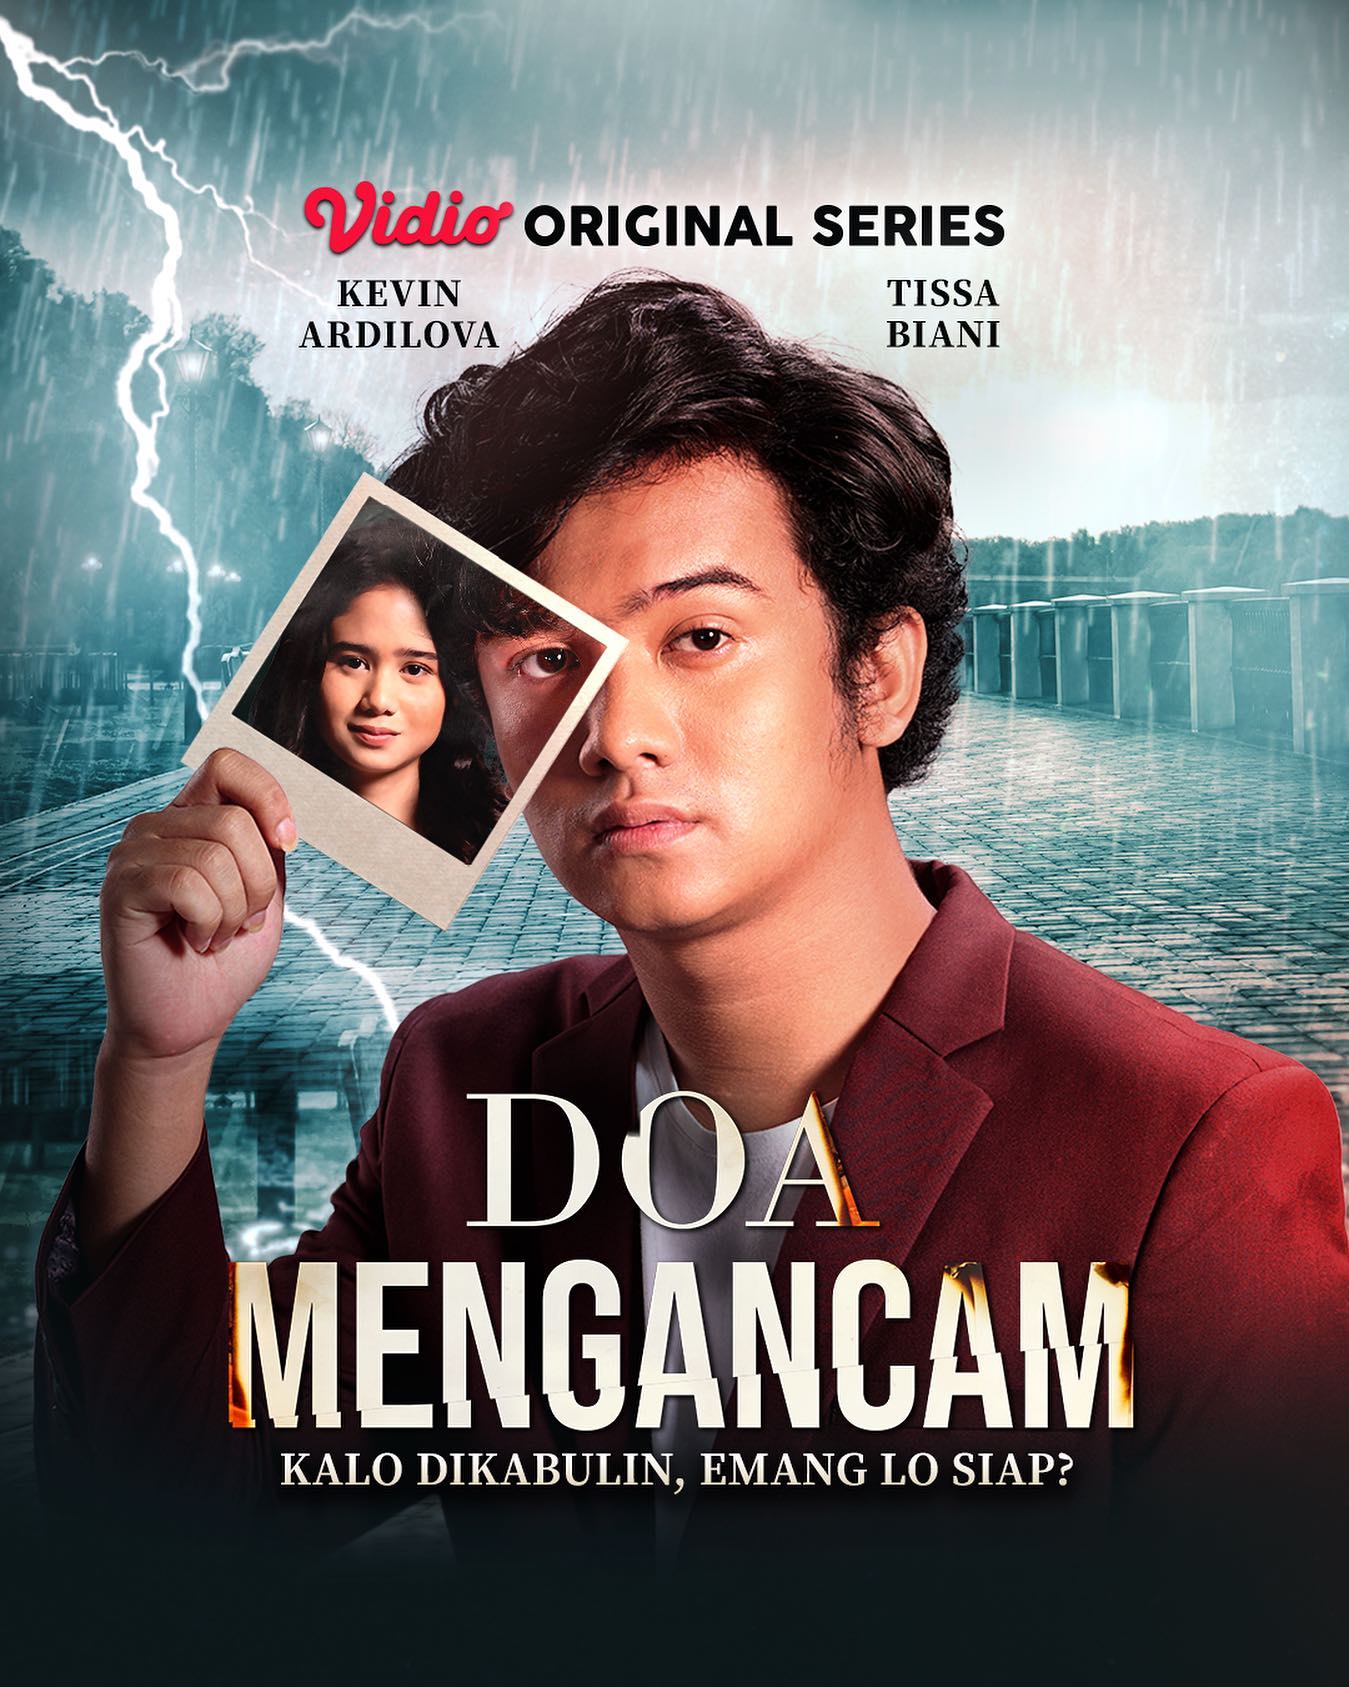 TV ratings for Doa Mengancam in Australia. Vidio TV series